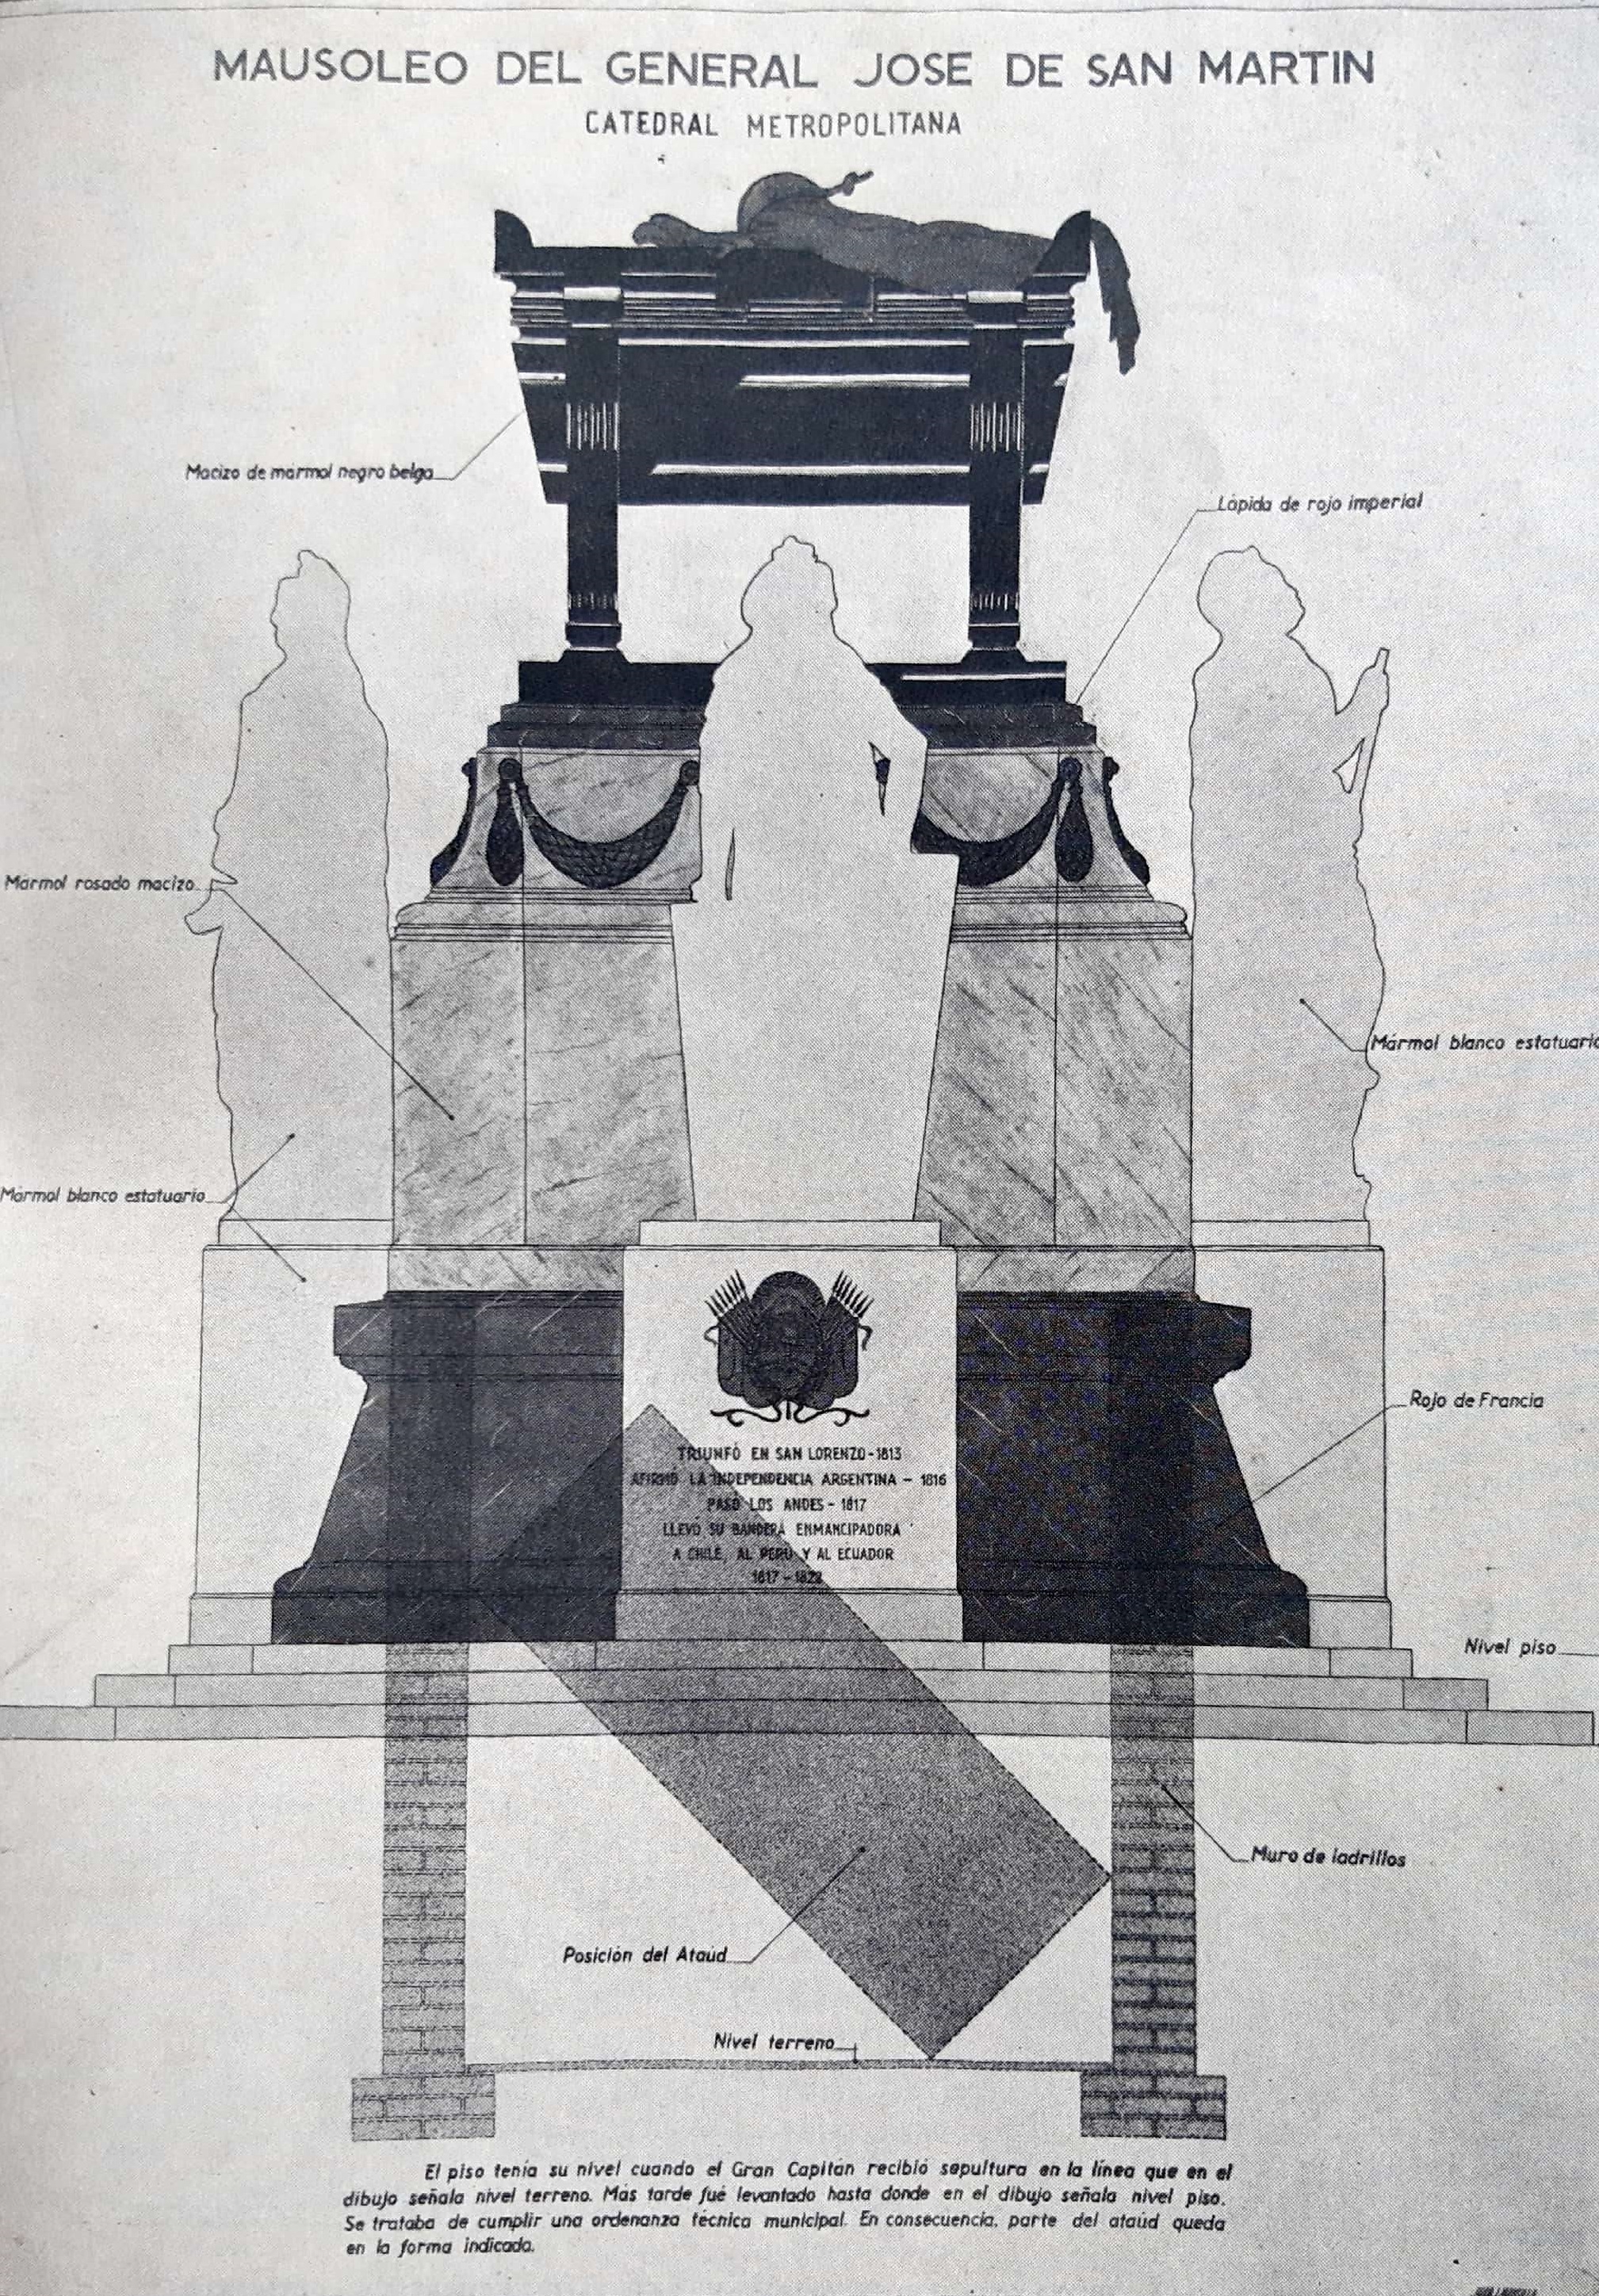 Descripción publicada por el Instituto Nacional Sanmartiniano del sepulcro de San Martín, con la posición en la que se encuentra el féretro (Síntesis documental Sanmartiniana, de Armando Tonelli y Alberto Bembihy Videla, Buenos Aires, 1950)